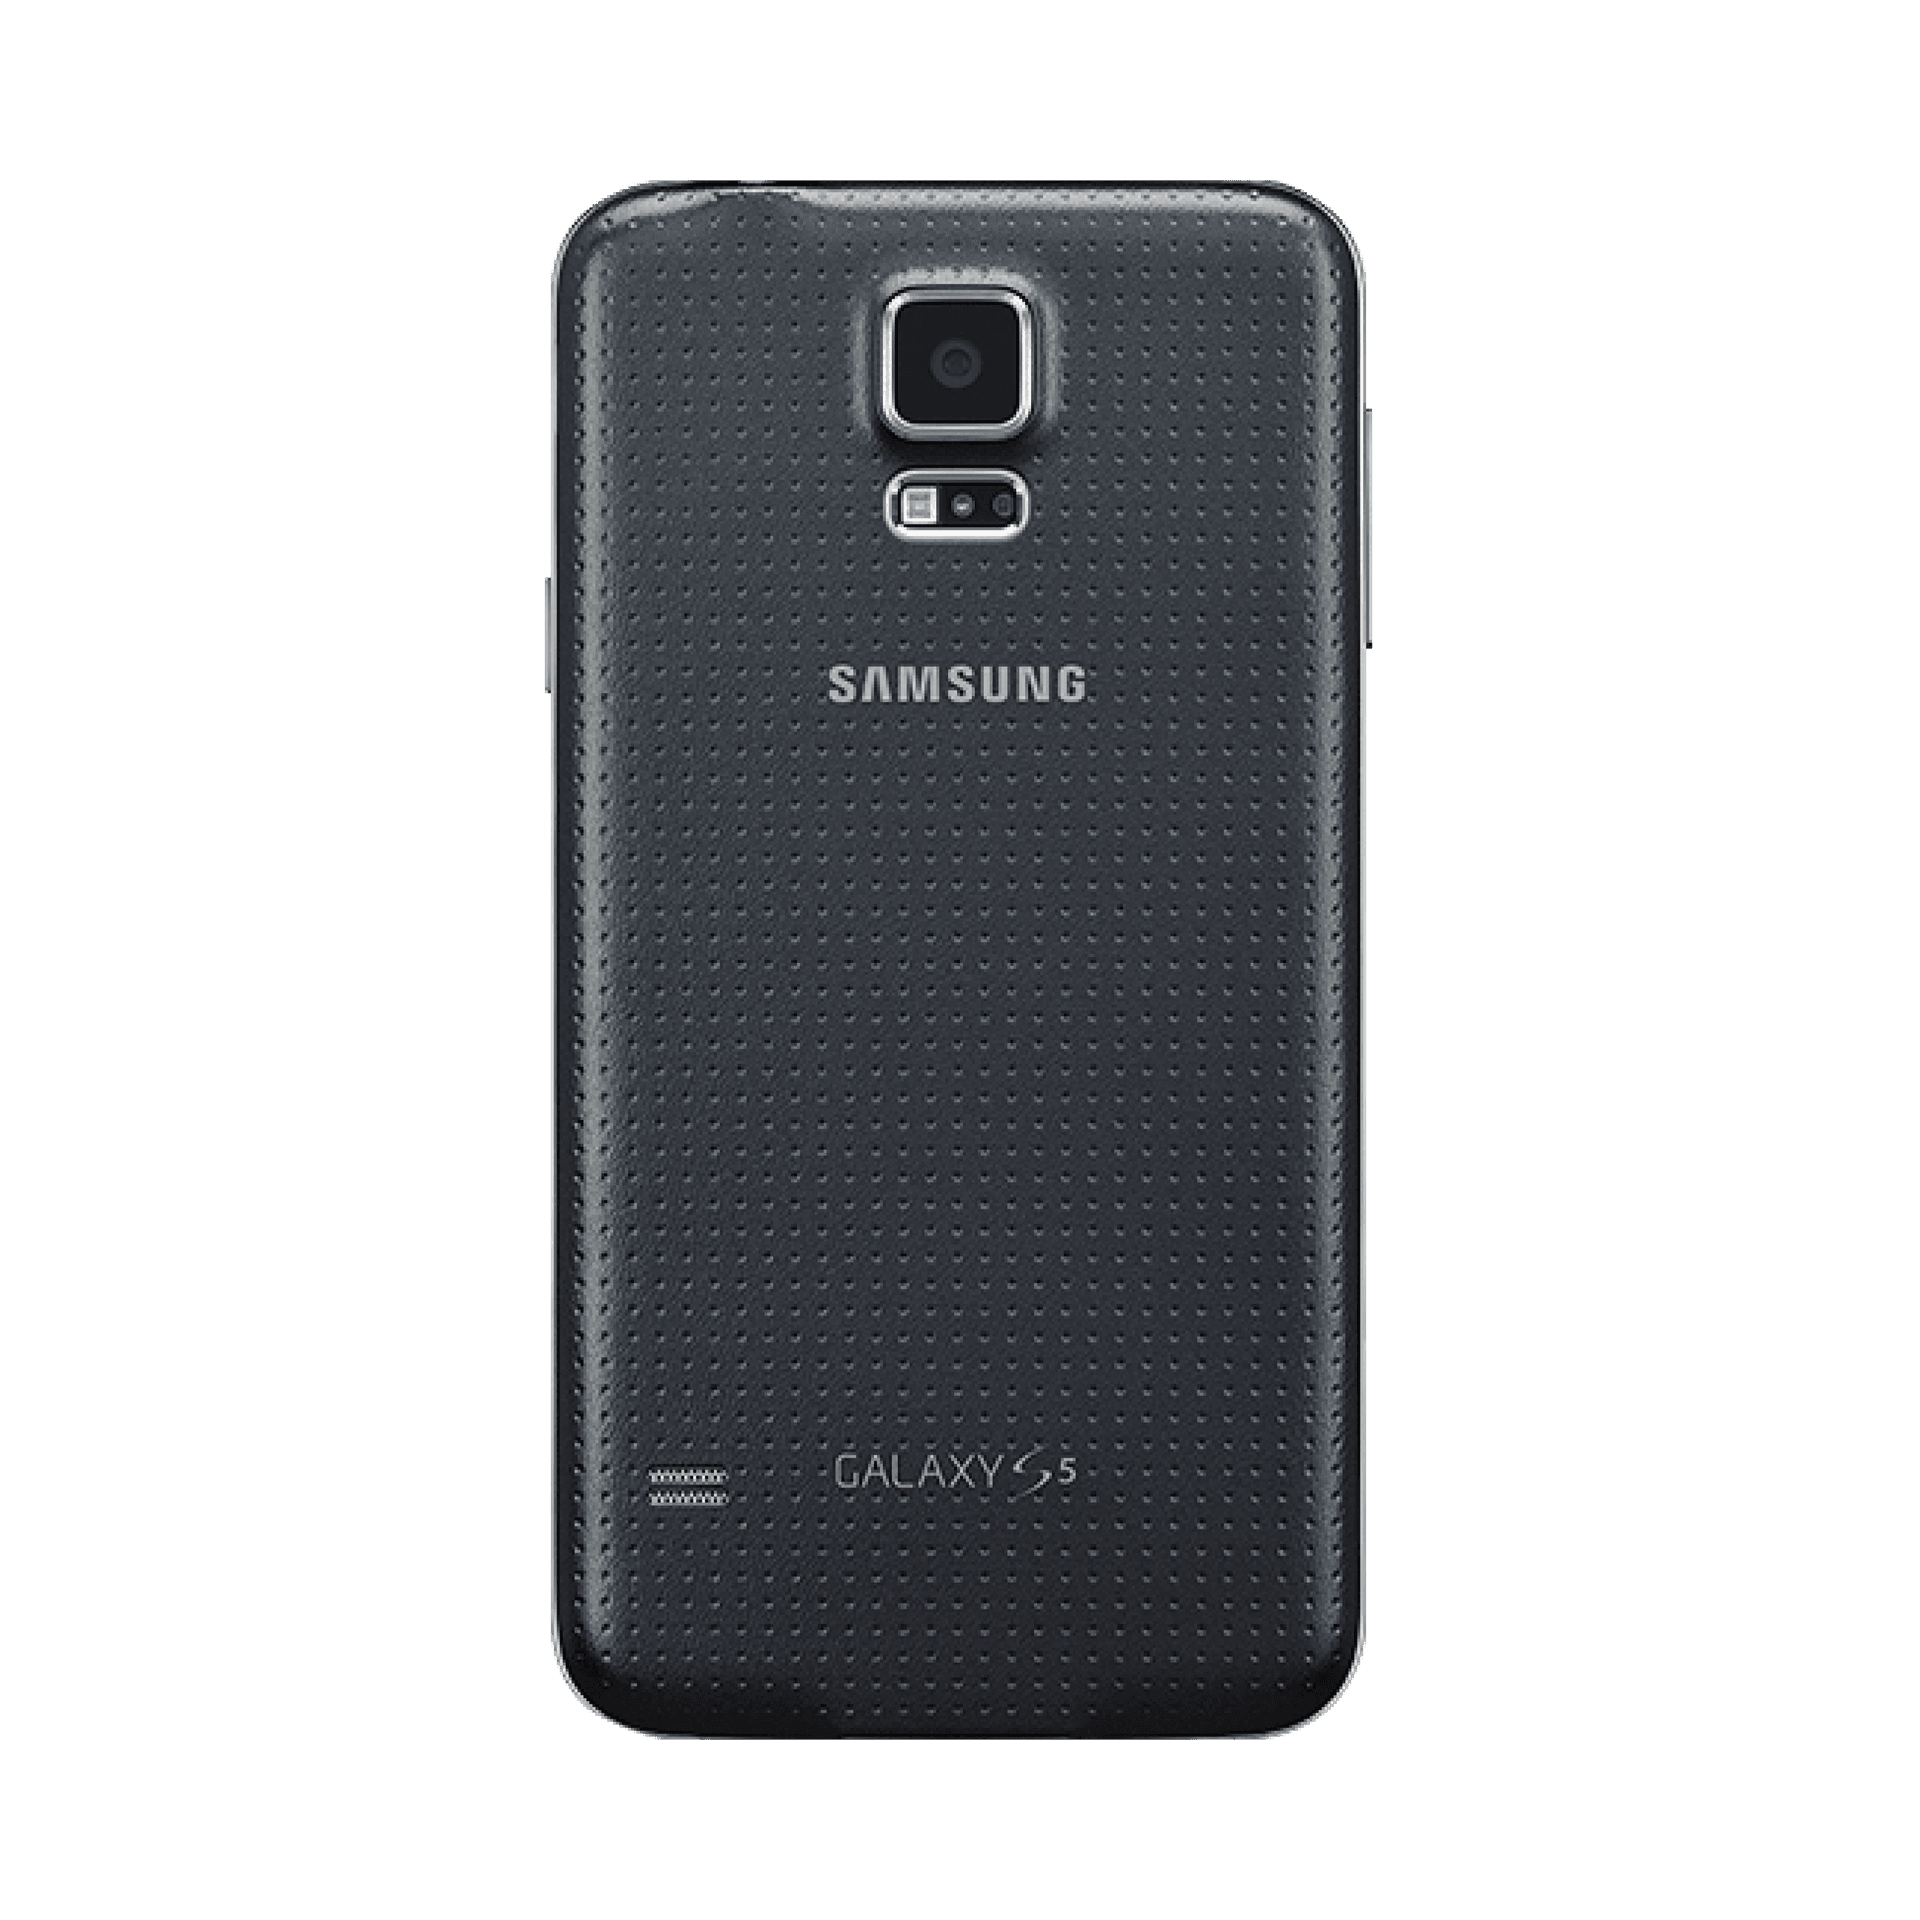 Samsung Galaxy S5 - 16 GB - Kömür Siyahı